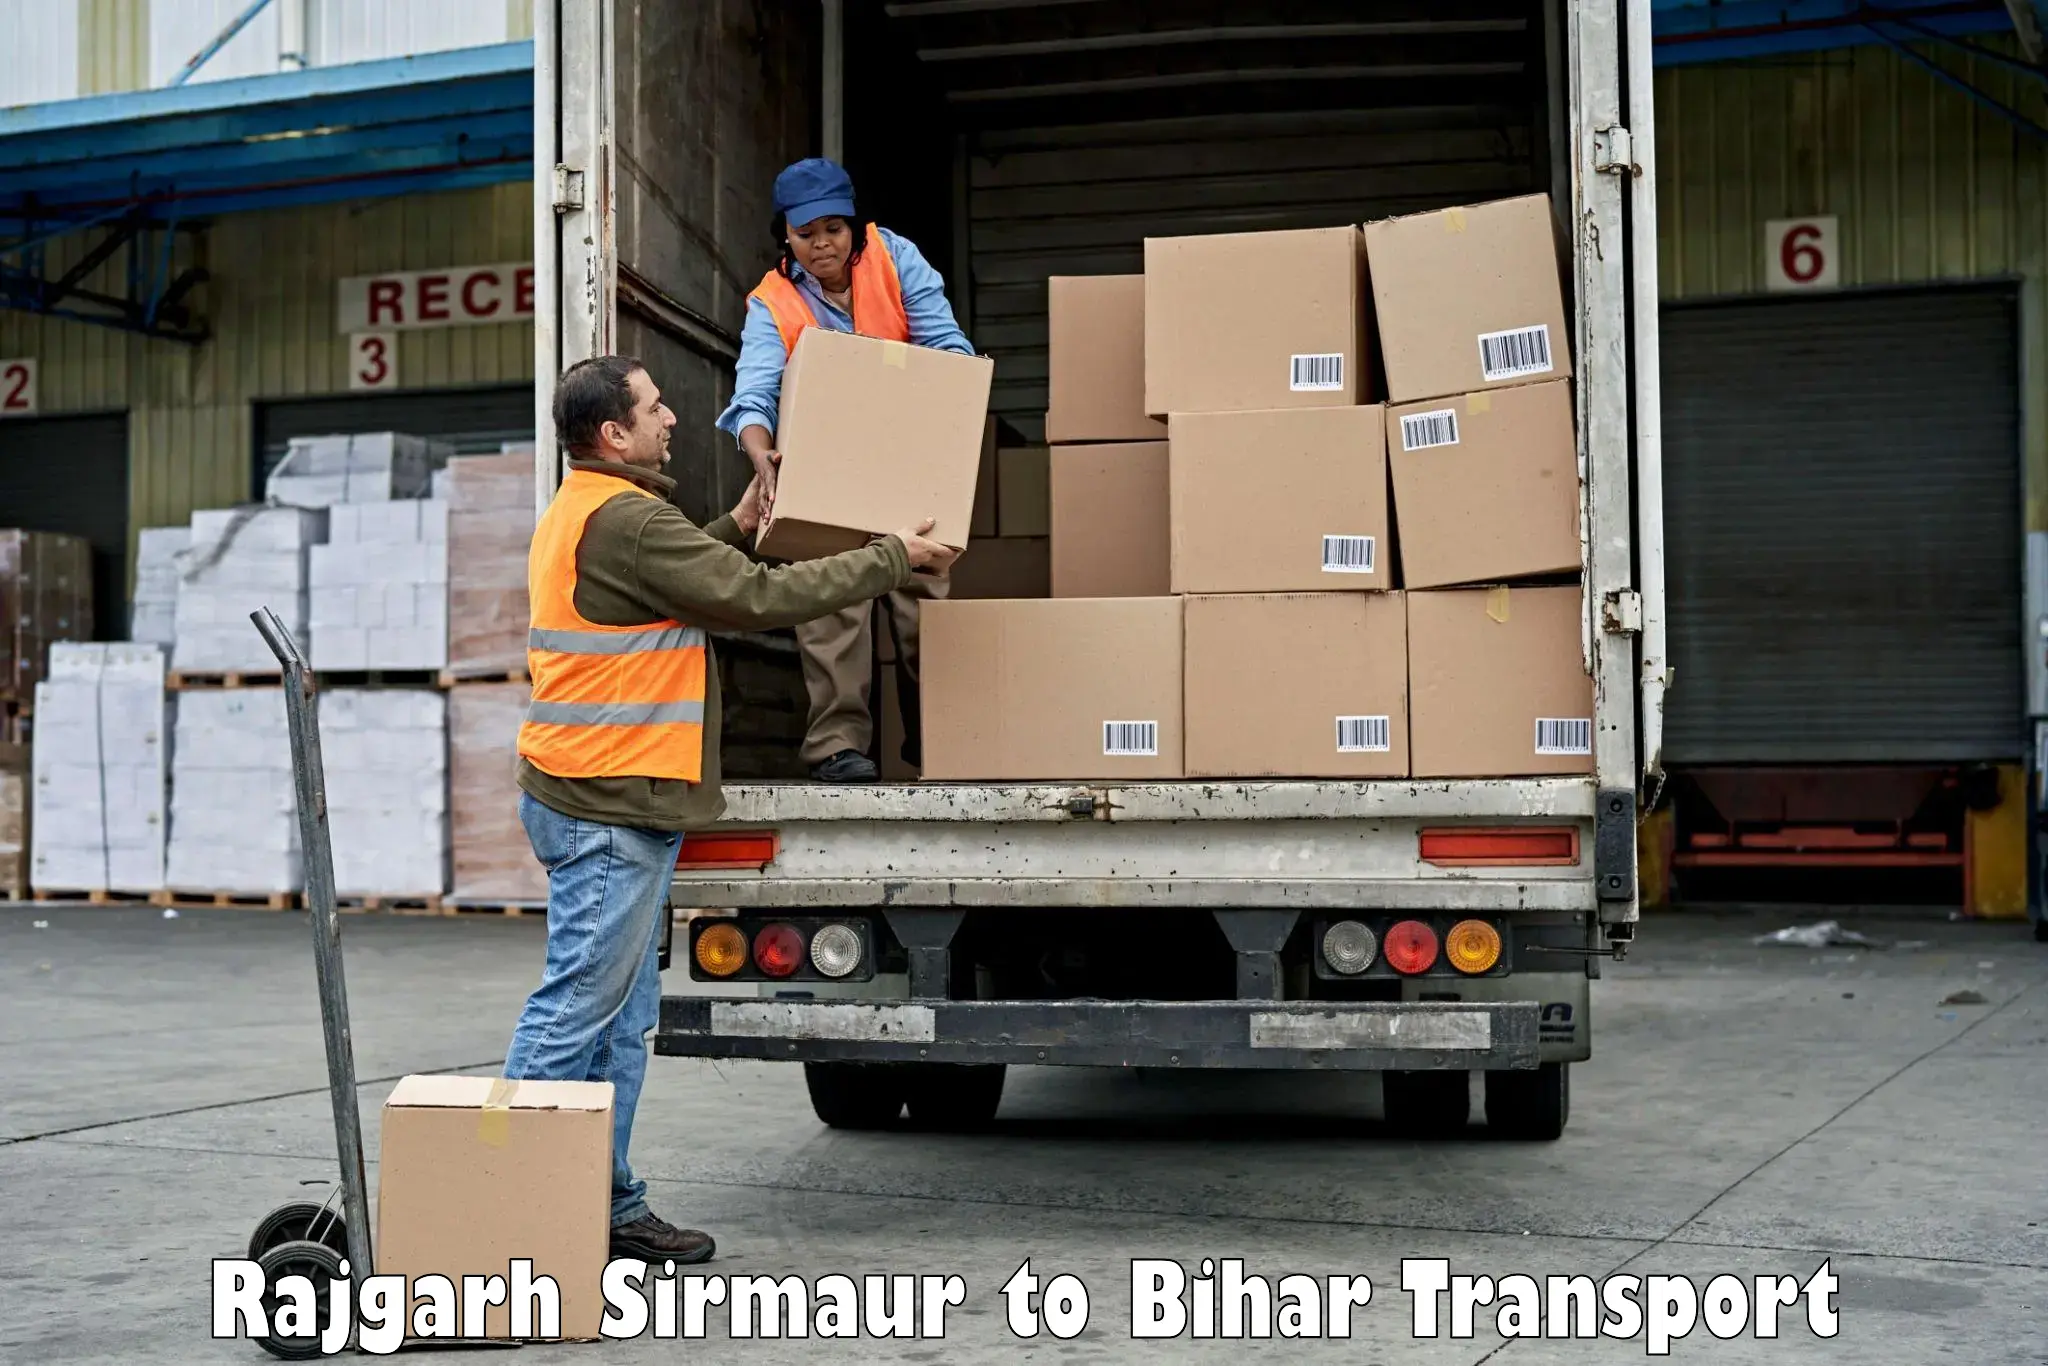 Road transport online services Rajgarh Sirmaur to Sugauna